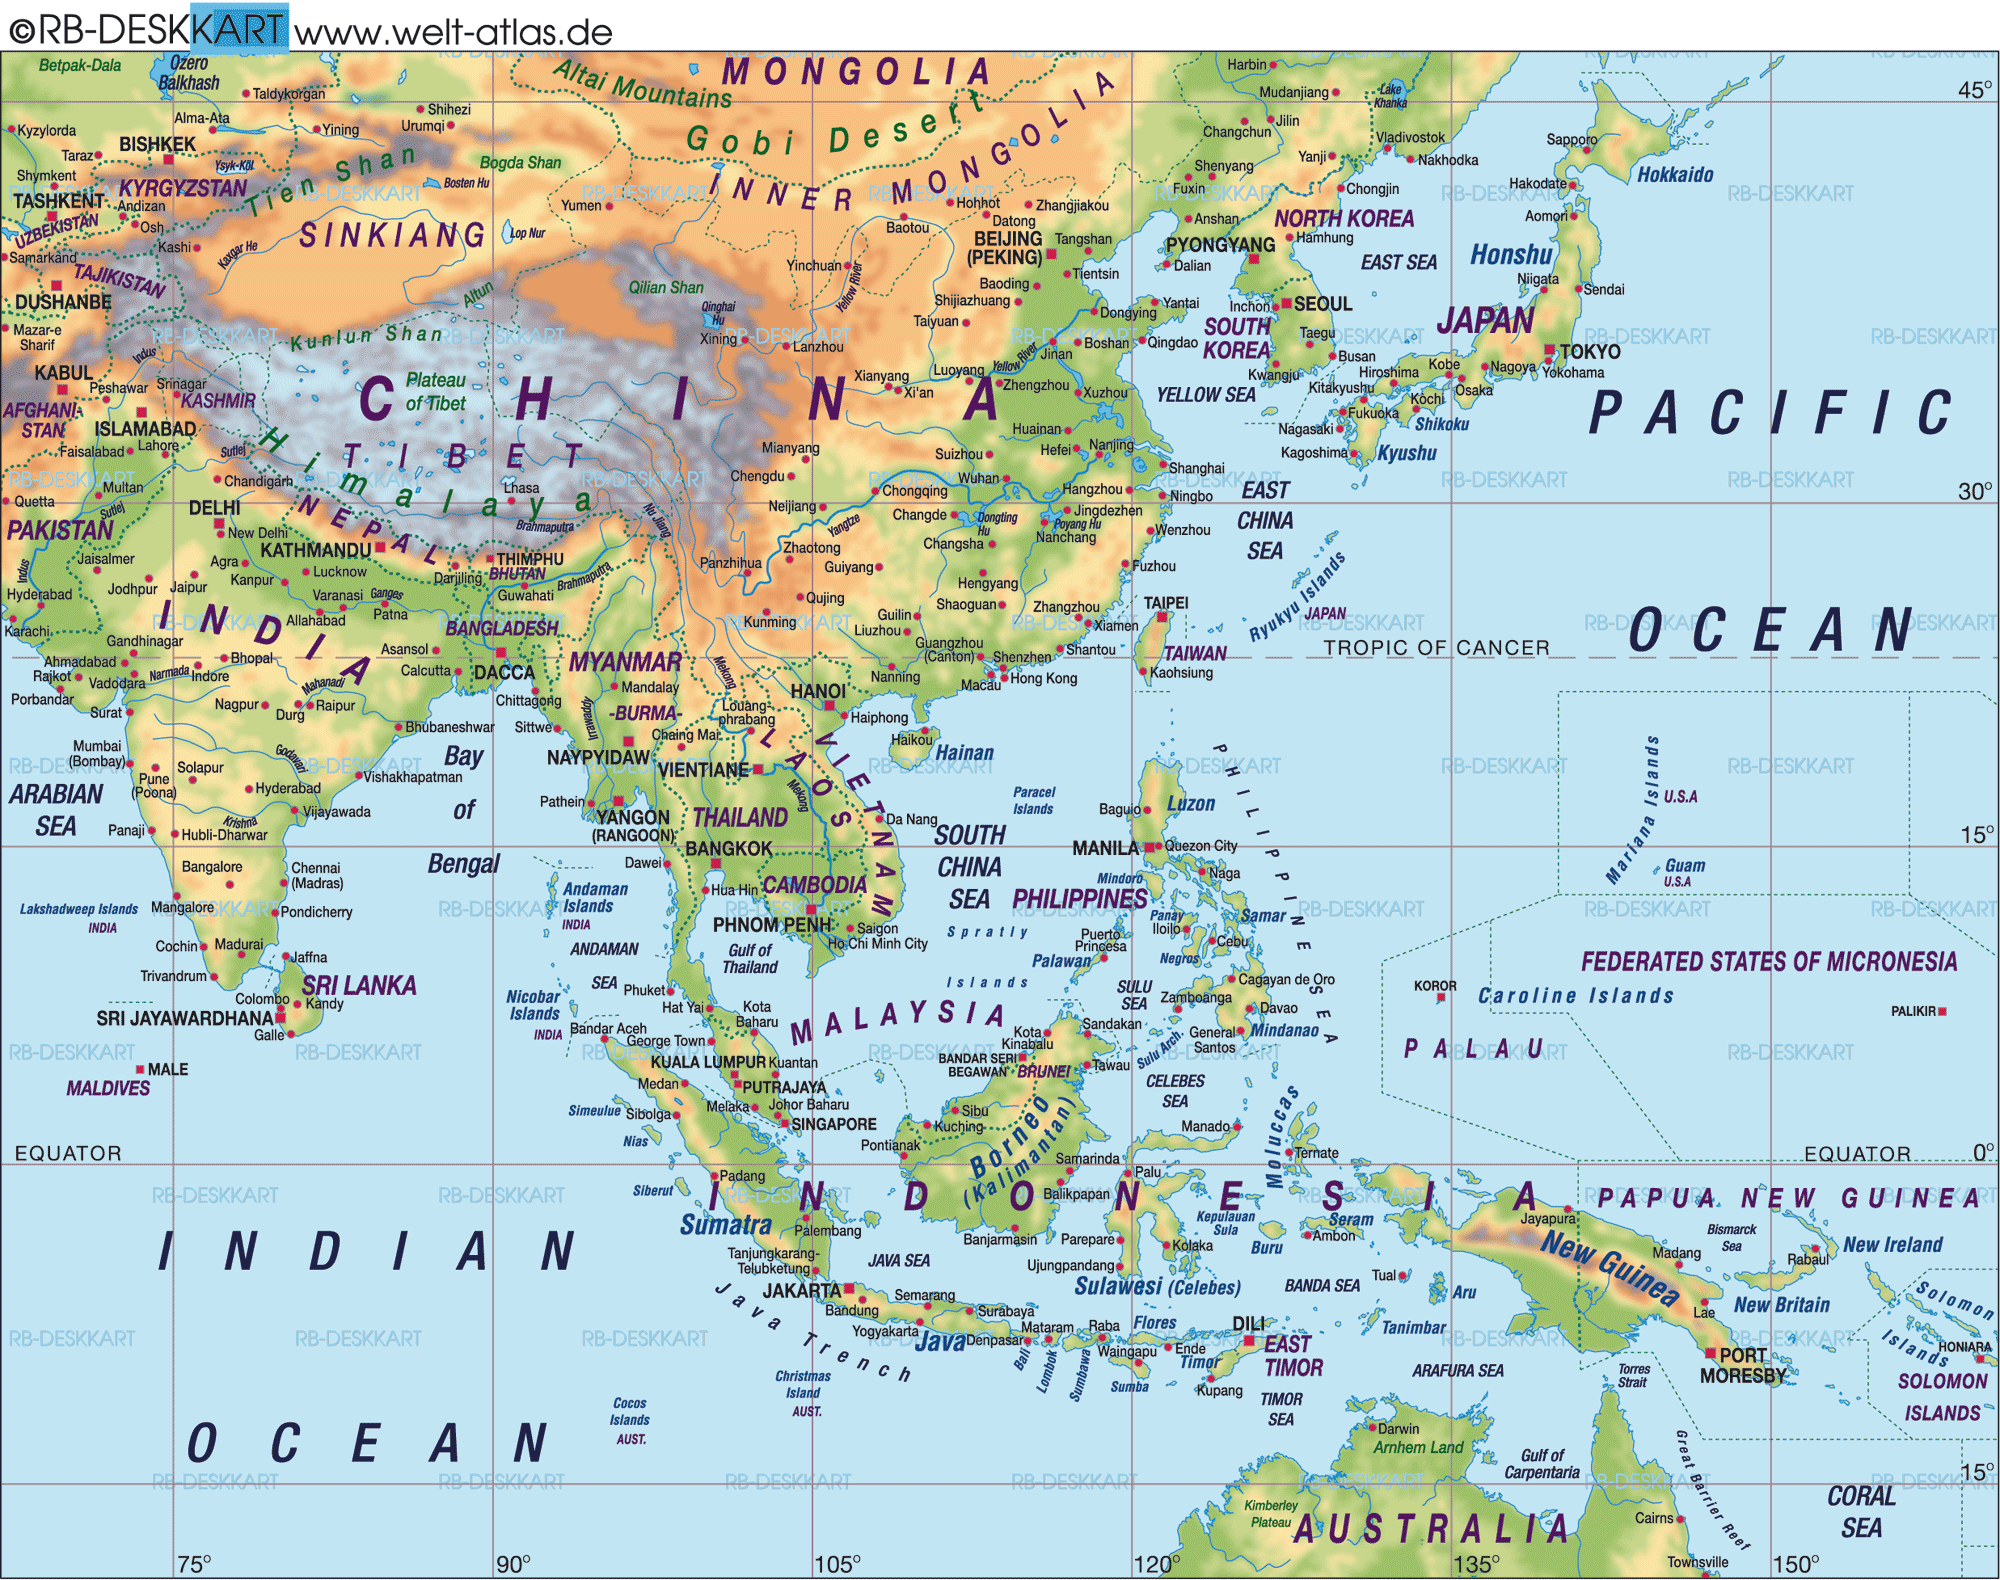 Karte von Fernost (Asien) (Übersichtskarte / Regionen der Welt)